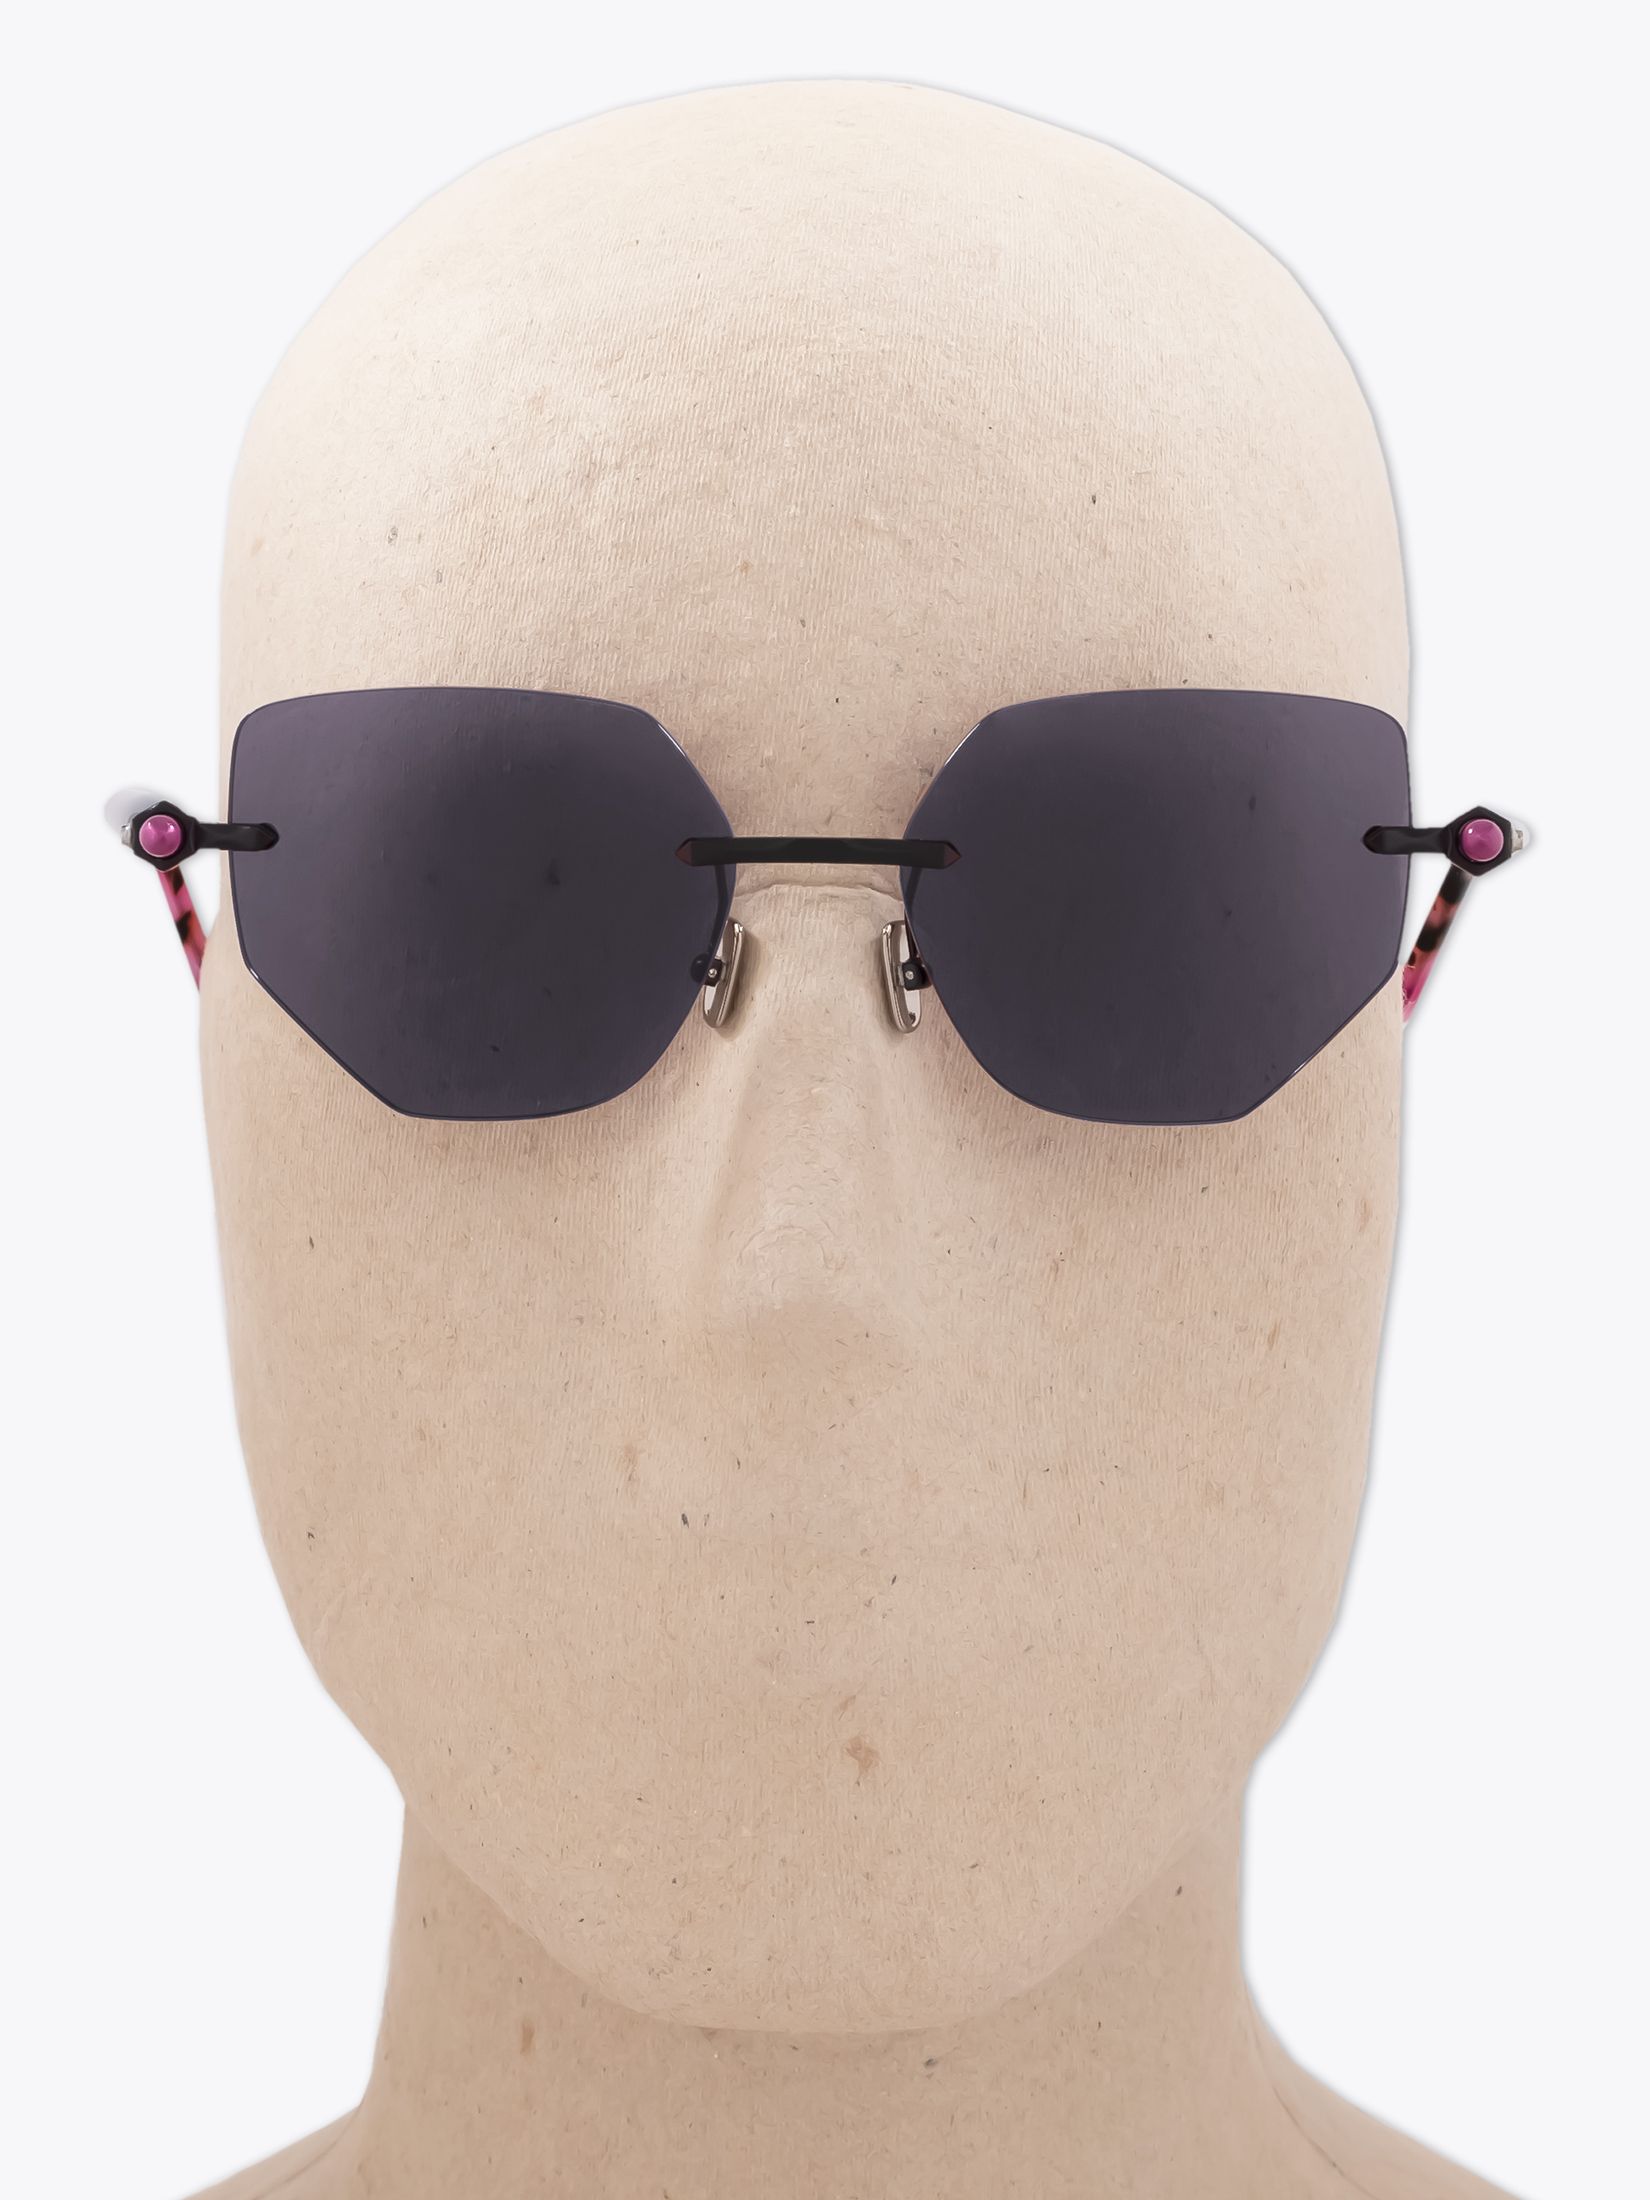 Kuboraum Sunglasses - Mask X12 Pink/Light Pink - E35 Shop